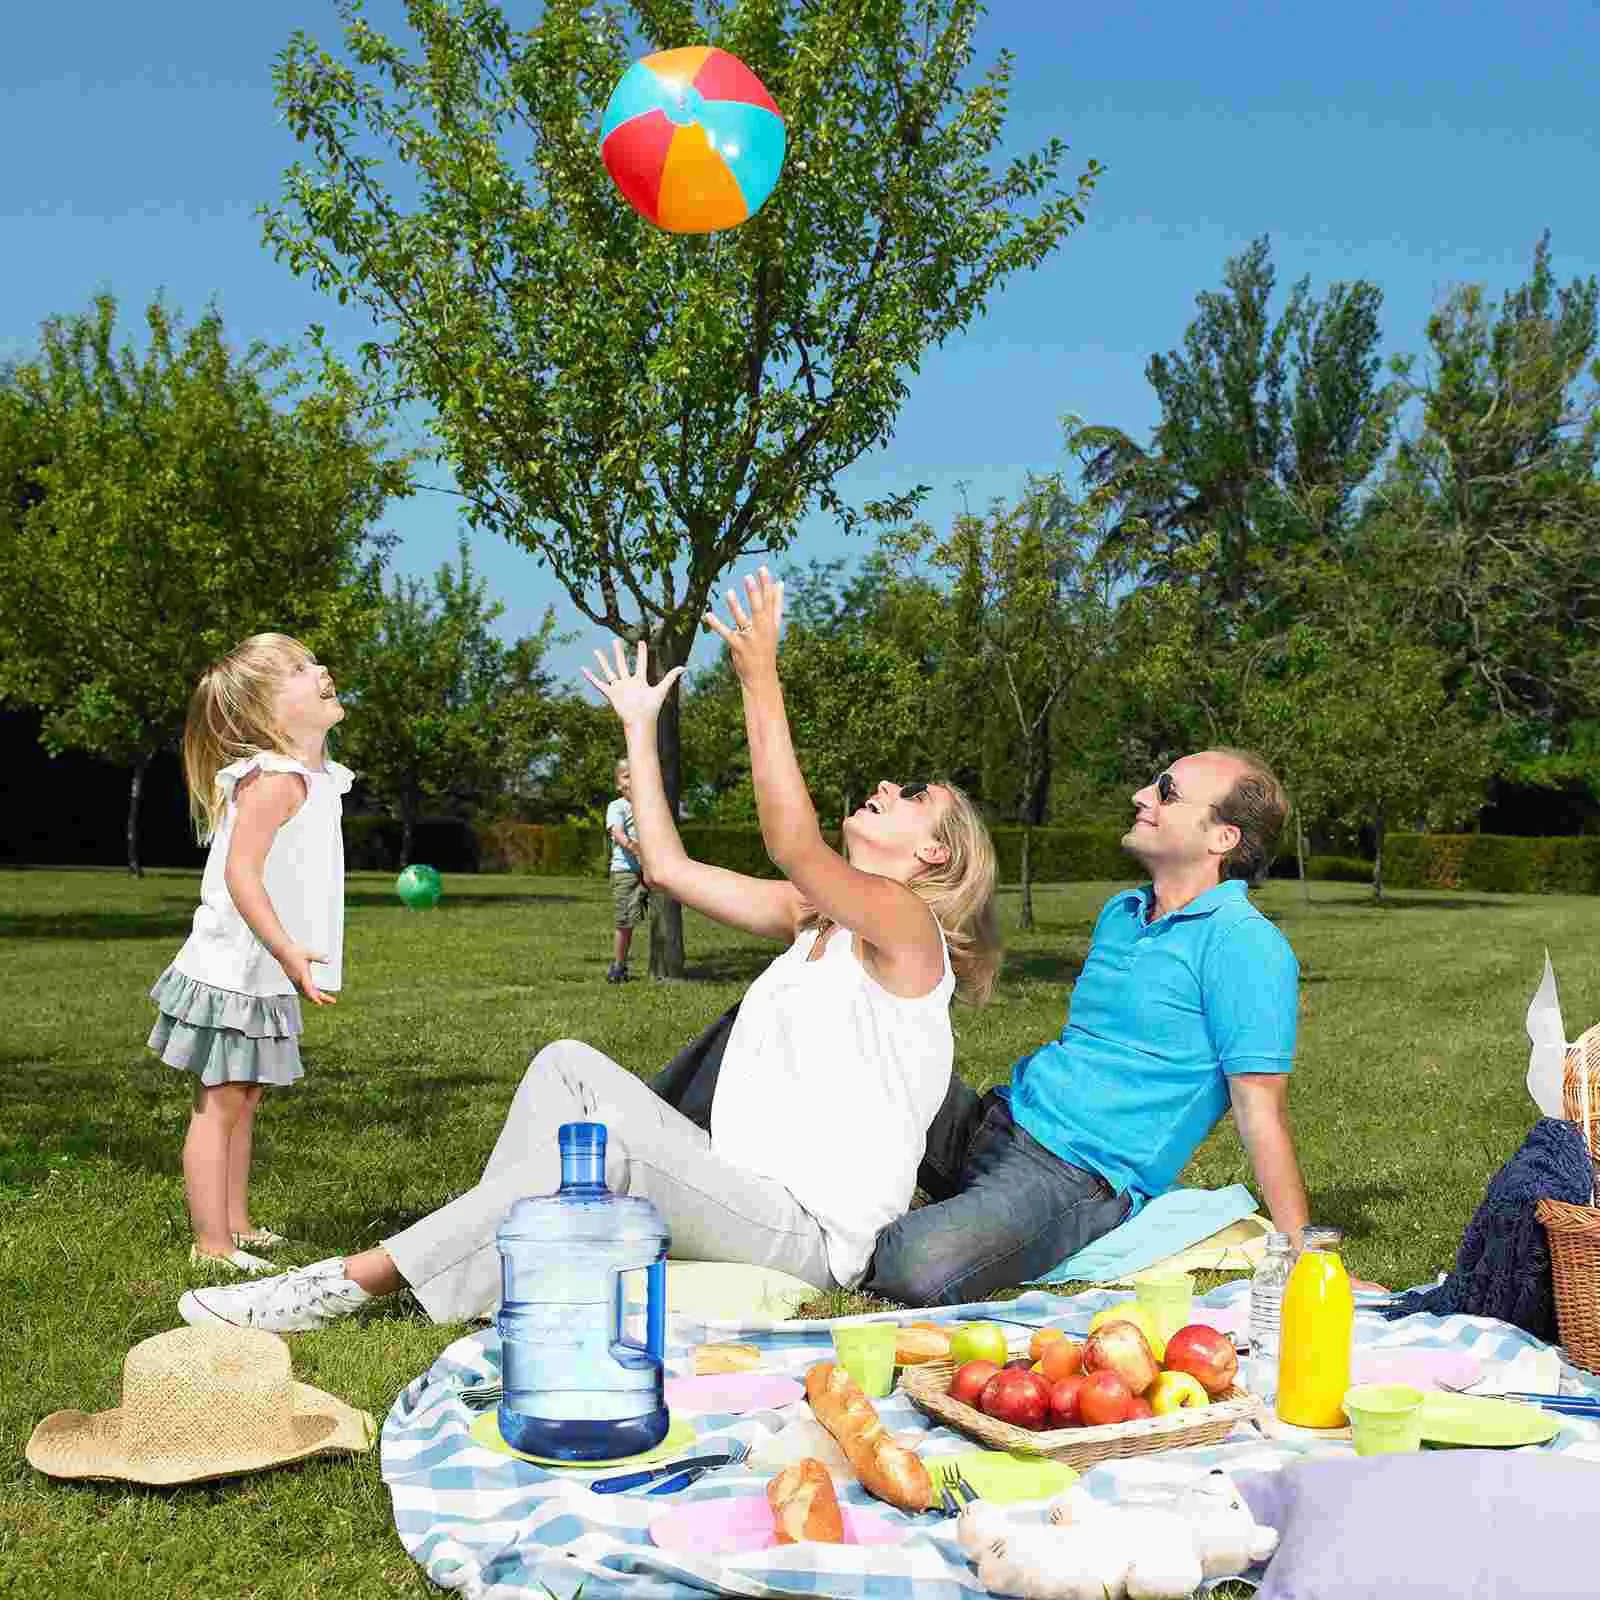 Описание пикника. Семейный праздник на природе. Пикник на природе. Пикник с семьей на природе. Семейная фотосессия пикник.